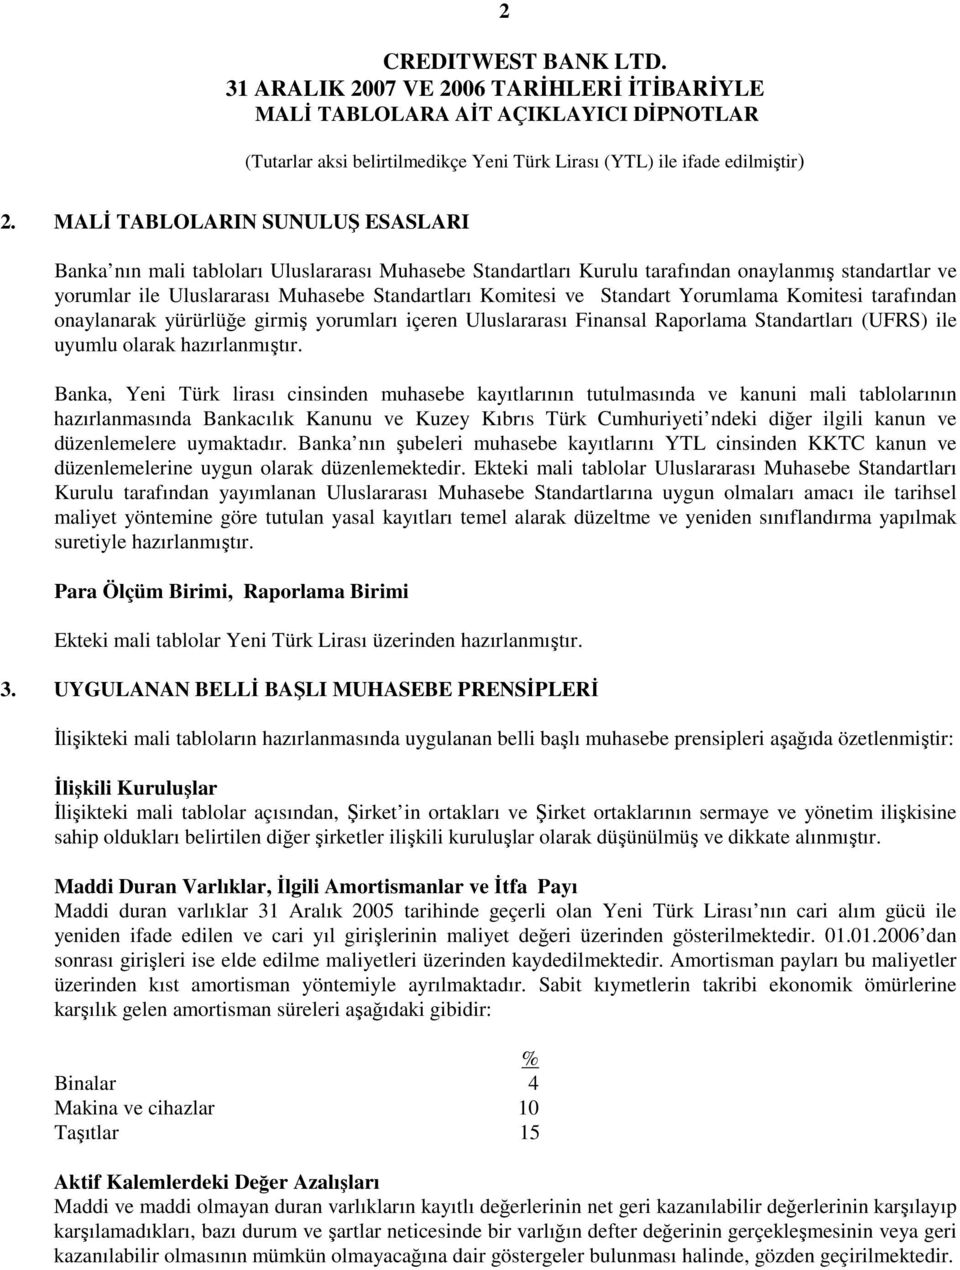 Banka, Yeni Türk lirası cinsinden muhasebe kayıtlarının tutulmasında ve kanuni mali tablolarının hazırlanmasında Bankacılık Kanunu ve Kuzey Kıbrıs Türk Cumhuriyeti ndeki diğer ilgili kanun ve